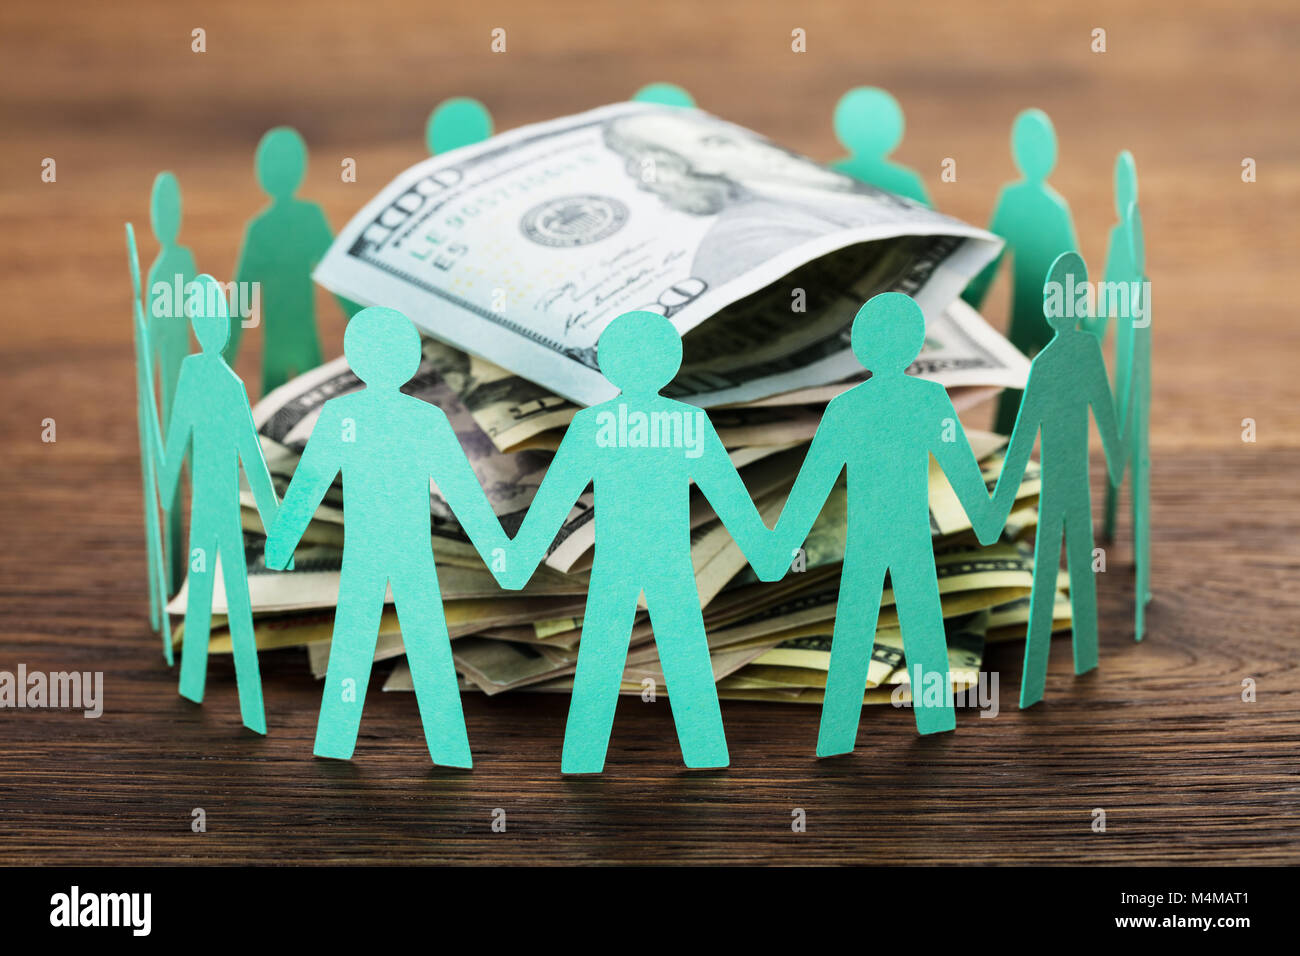 Concept Crowdfunding. Paper Cut Out figures humaines autour de la pile de centaines de Dollar Bills Banque D'Images